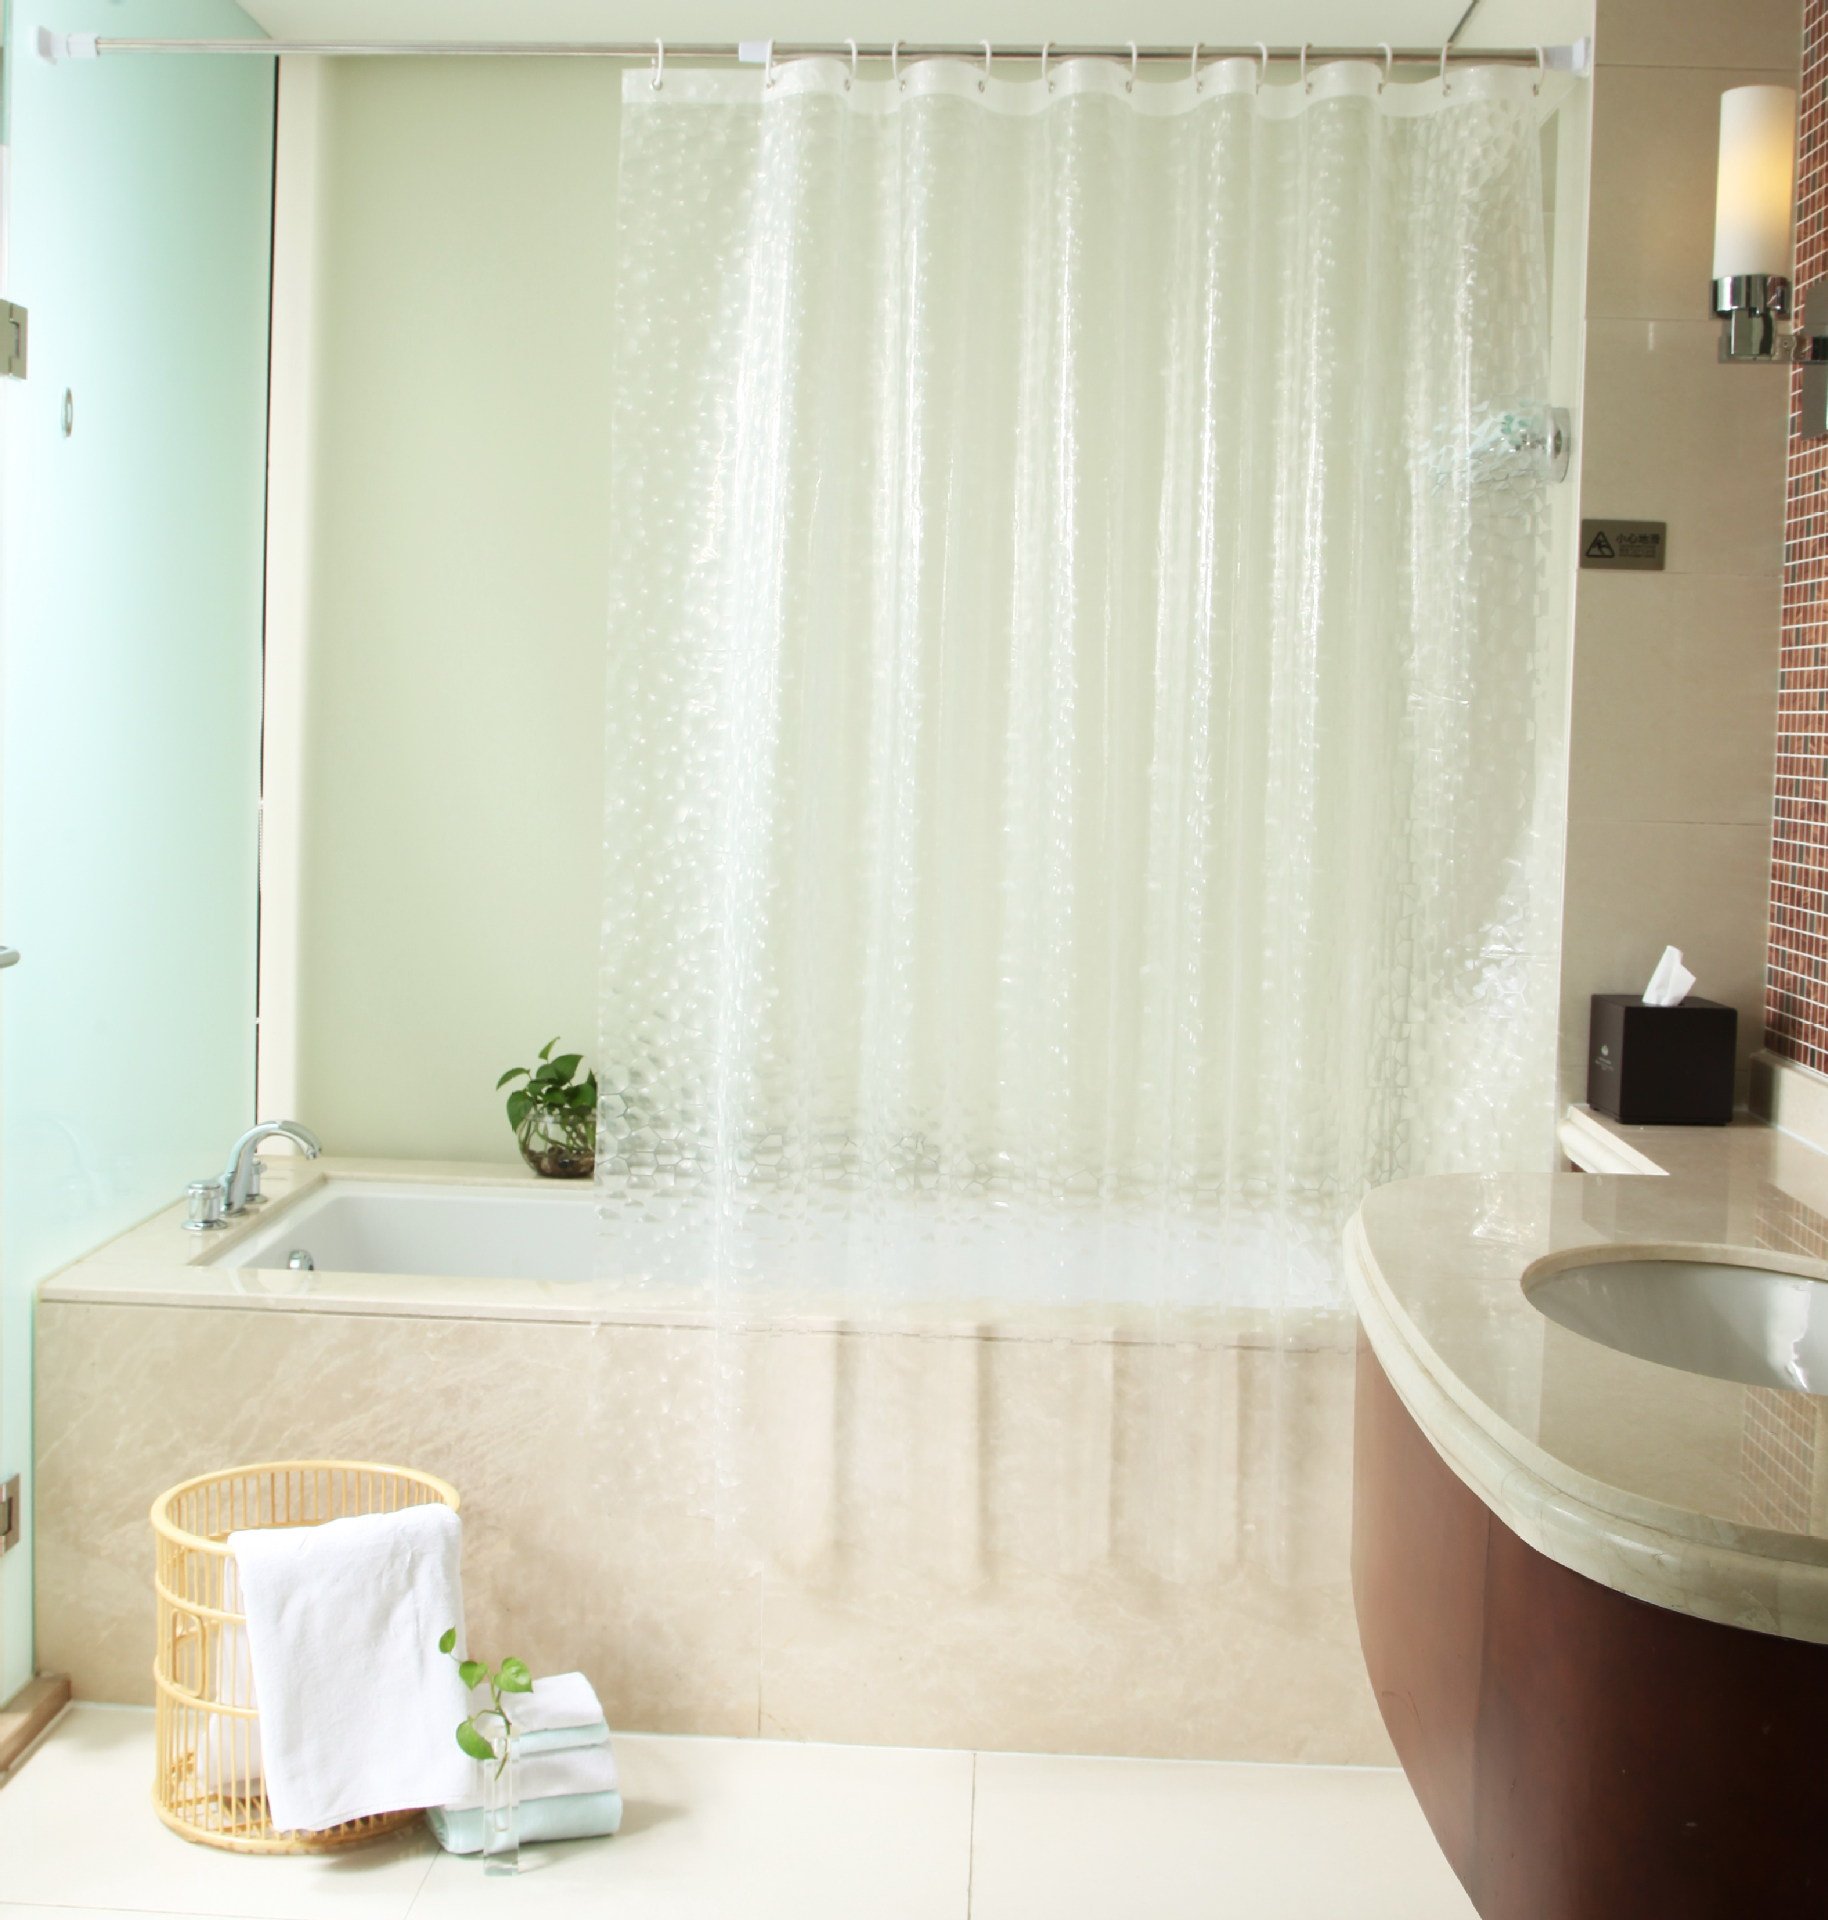 Лучшие шторки для ванны. Штора для ванной комнаты «Shower Curtain» 3d Париж. Полиэтилен штора для ванной комнаты «Shower Curtain» 3d. Shower Curtain шторы для ванной 180x180 см ONLYSUN 1 PC. Занавеска PEVA 3d.